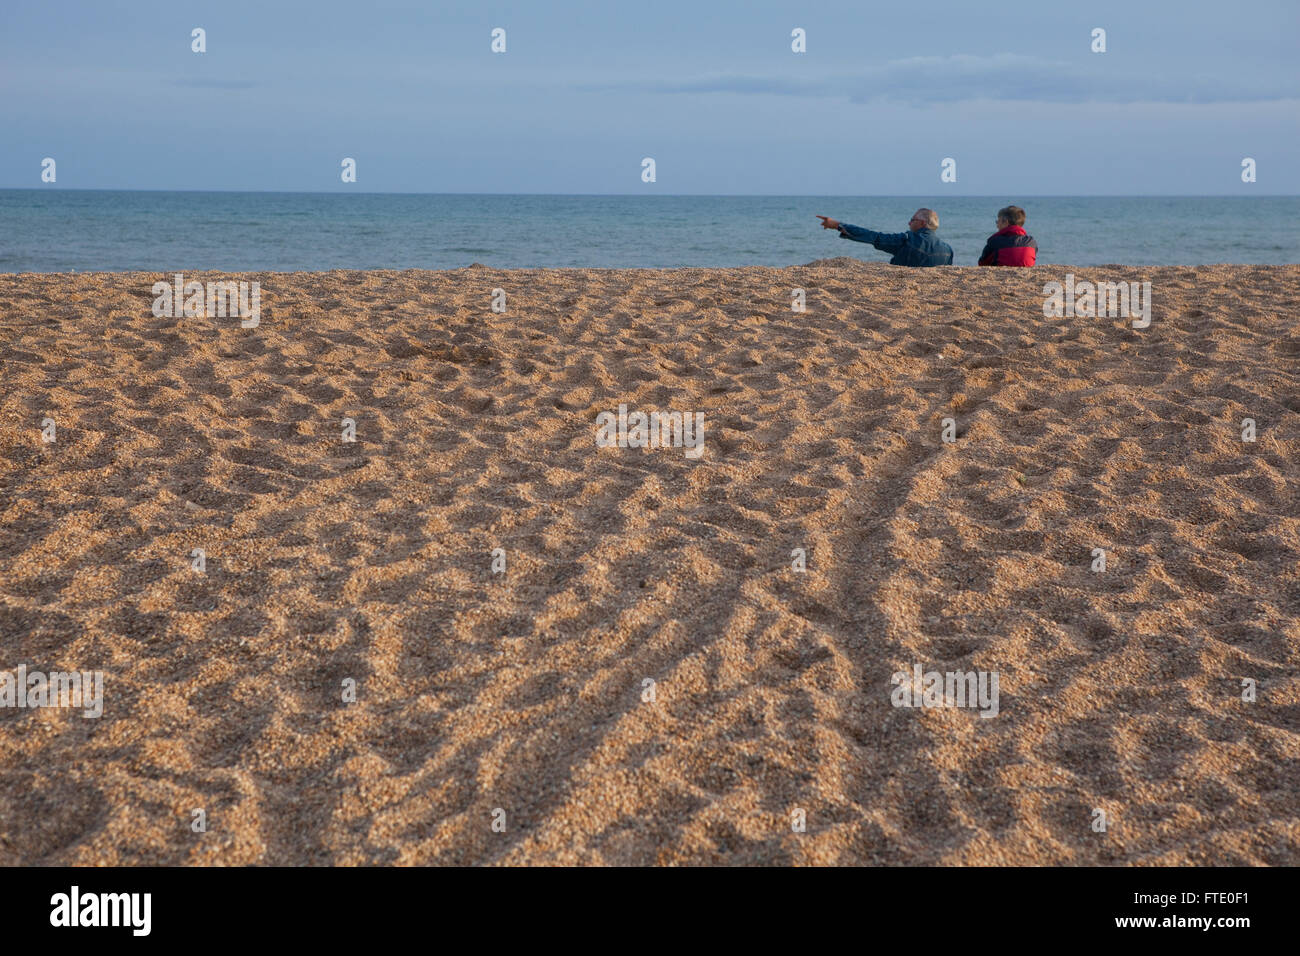 Ein paar wahrscheinlich im Ruhestand oder alten sitzen an einem Strand in der Dämmerung den Sonnenuntergang an der Küste, Ruhe und Kontemplation Leben in dieses friedliche ruhige Szene. Stockfoto